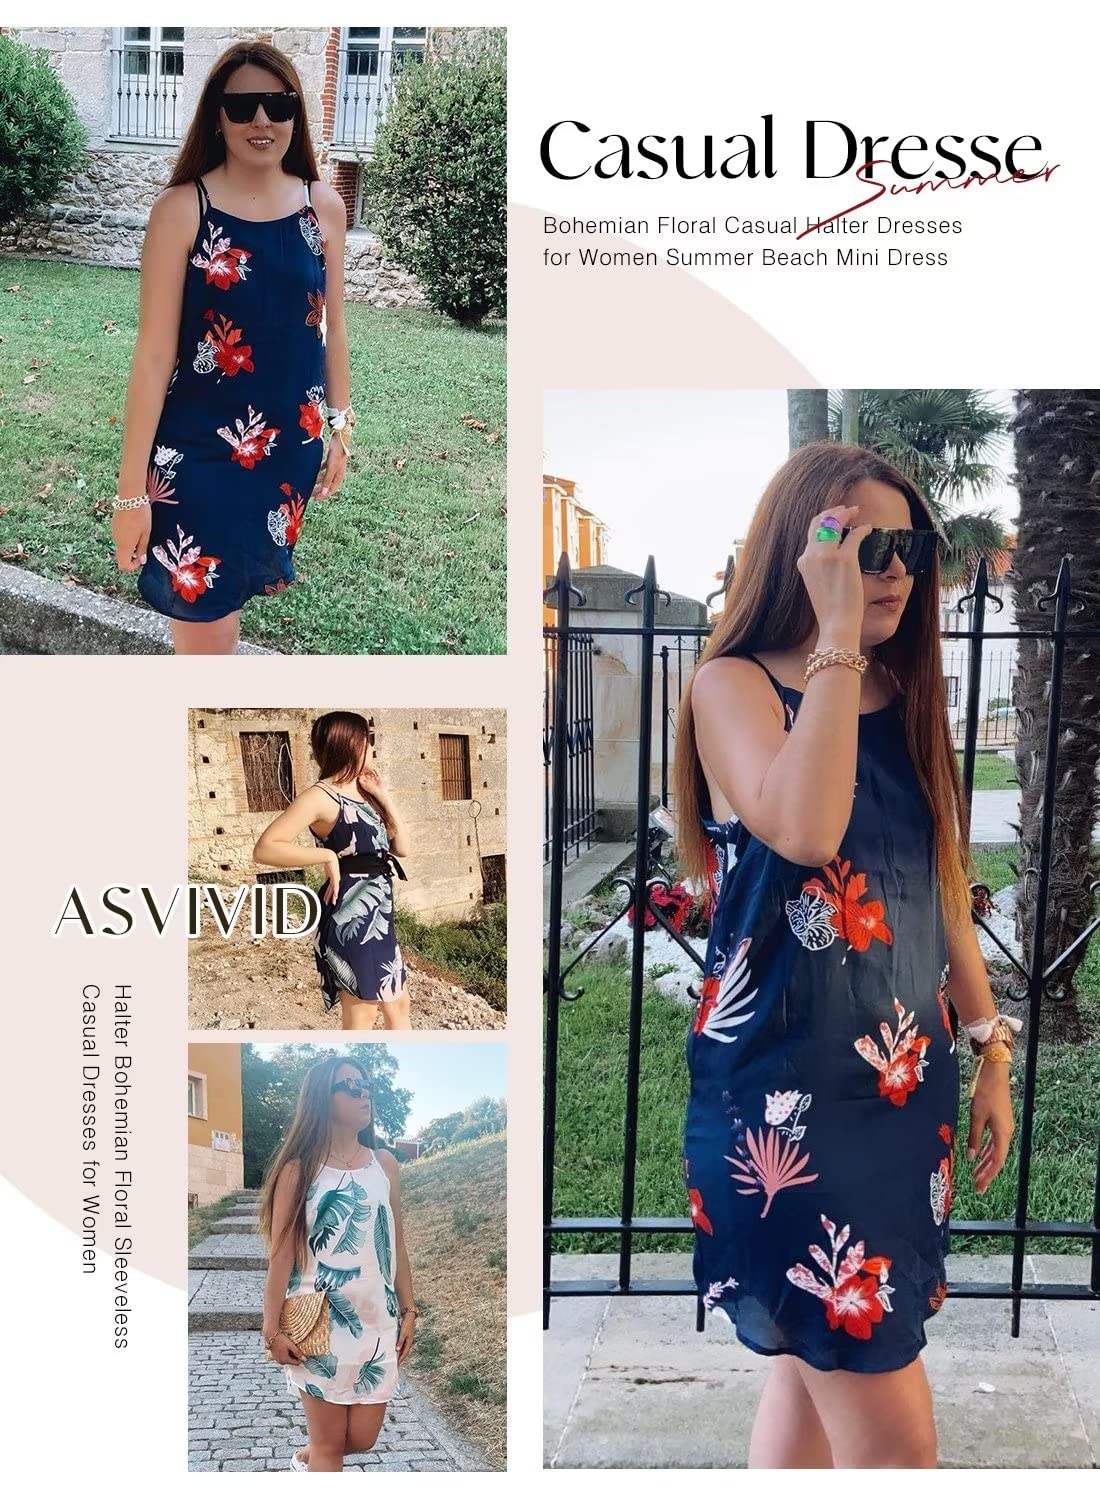 Asvivid Womens Halter Palm Leaf Floral Casual Dresses Summer Beach Dress Sleeveless Short Sundresses XS-XL